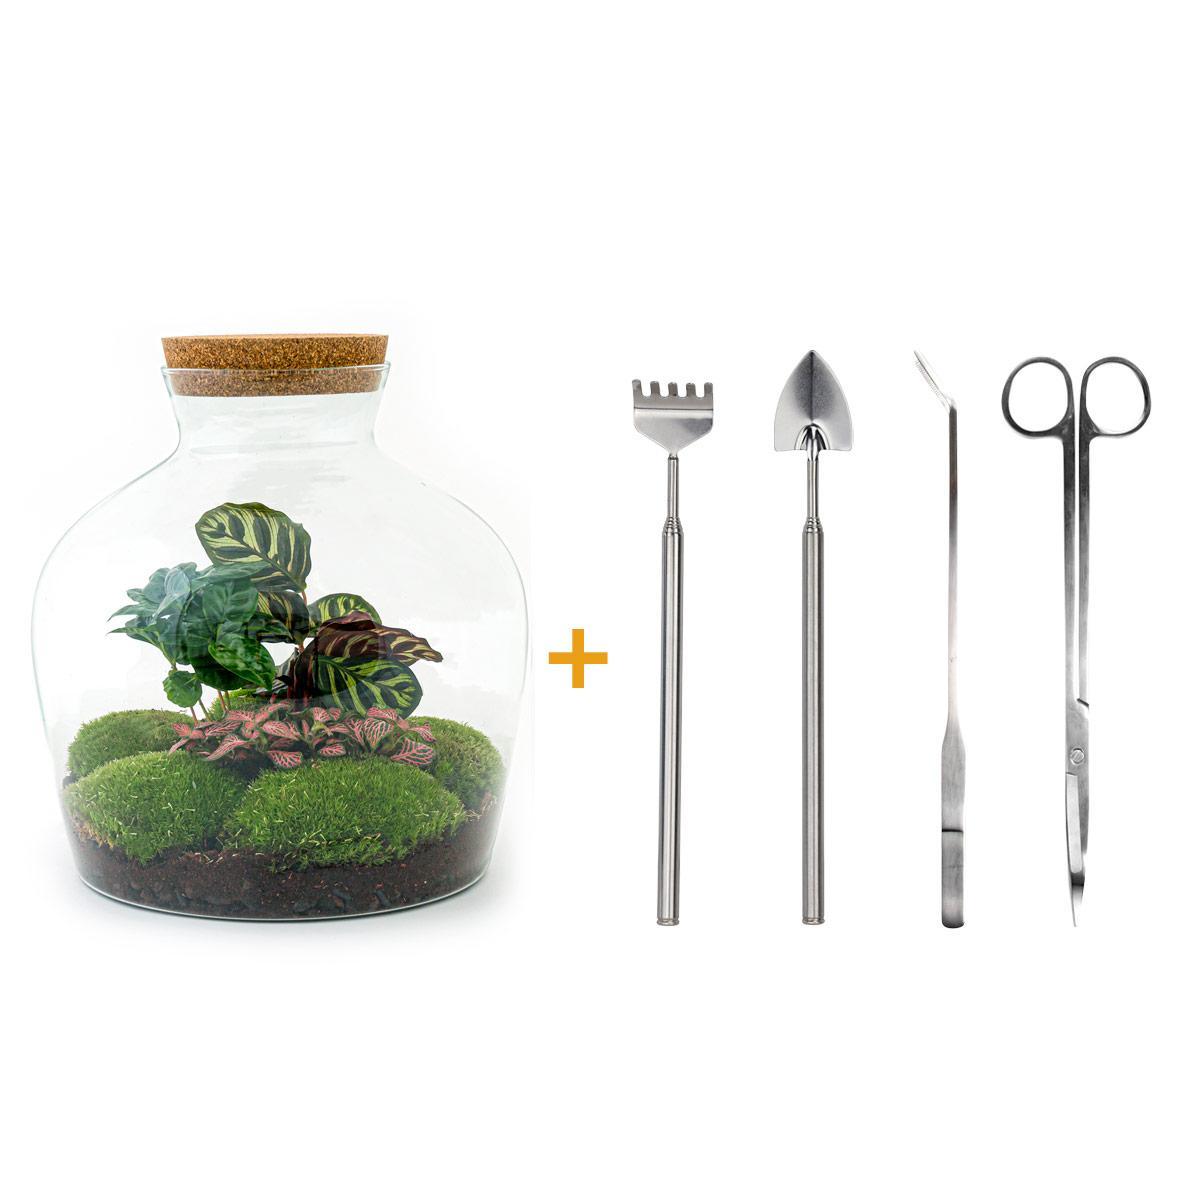 DIY terrarium - Fat Joe Coffea - ↑ 30 cm + Rake + Shovel + Tweezer + Scissors